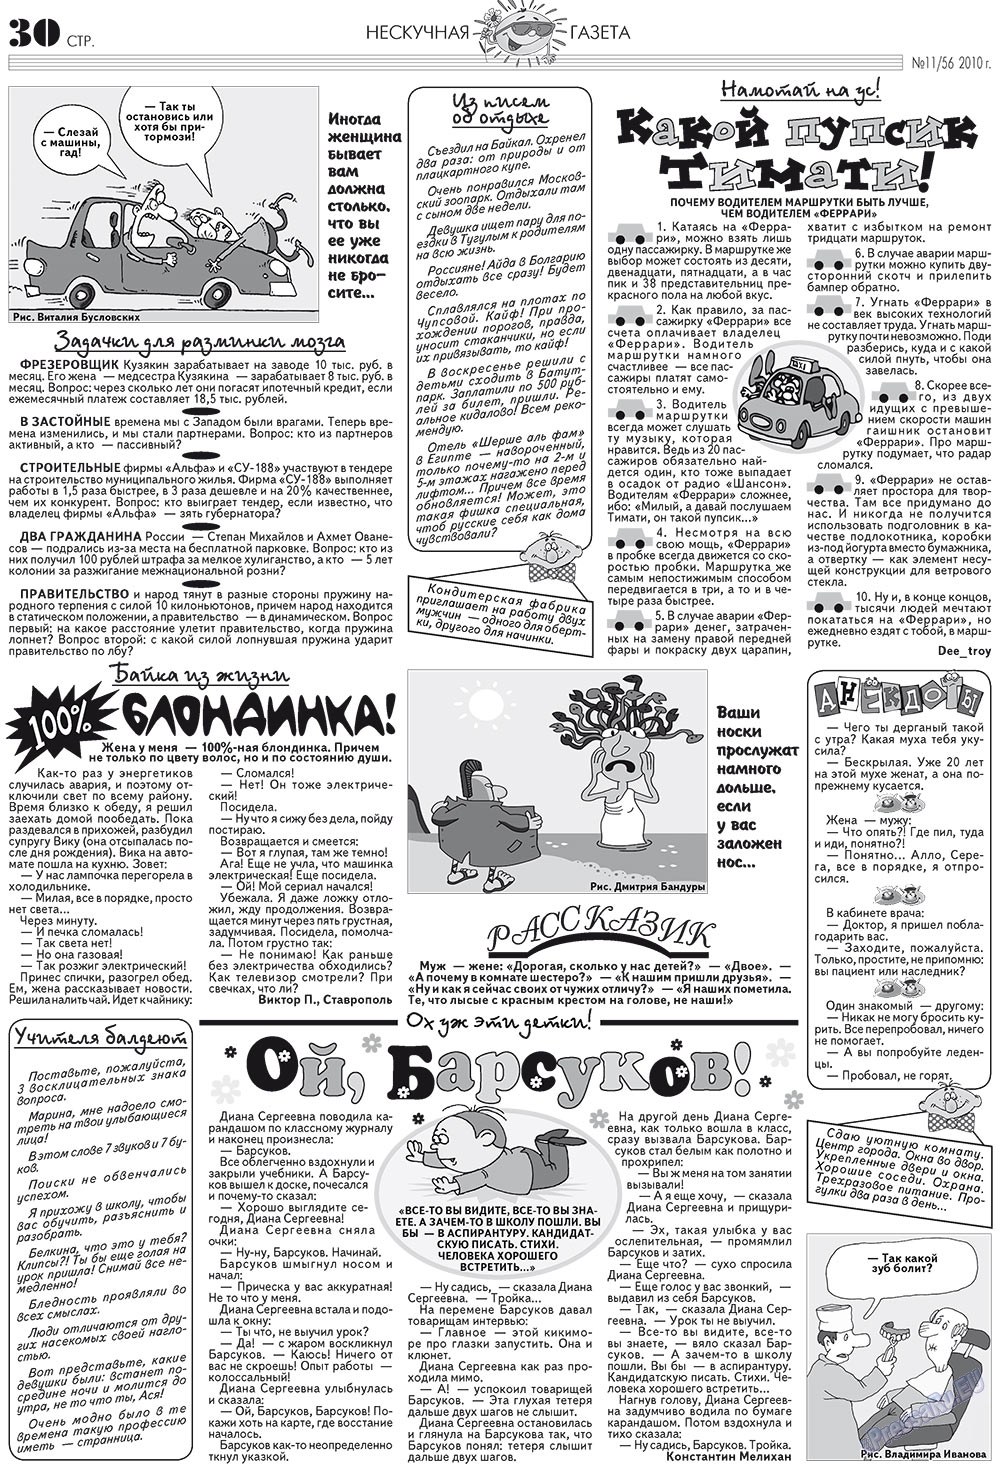 Нескучная газета, журнал. 2010 №11 стр.26